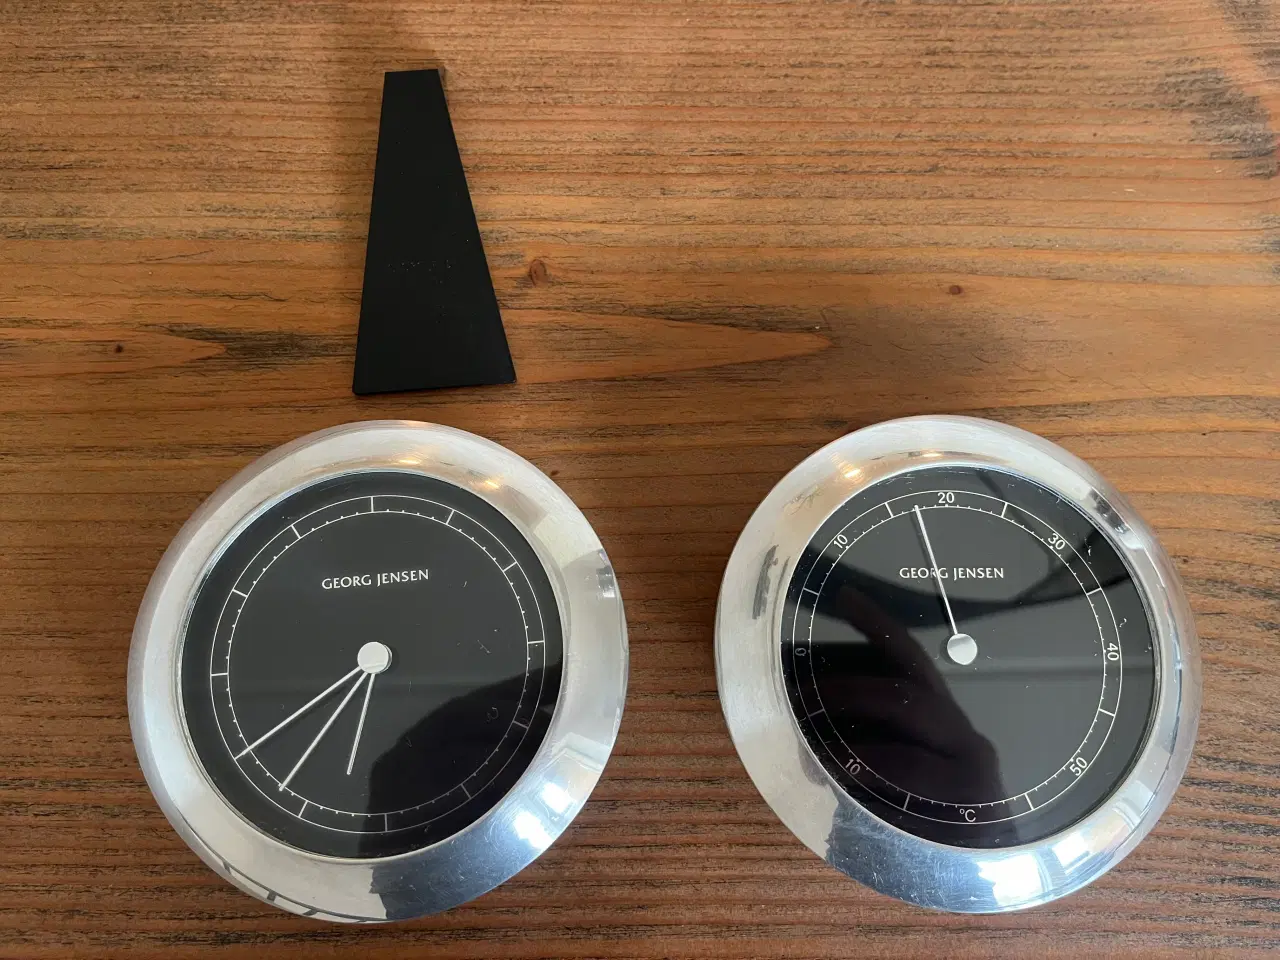 Billede 2 - Georg Jensen ur og termometer sæt